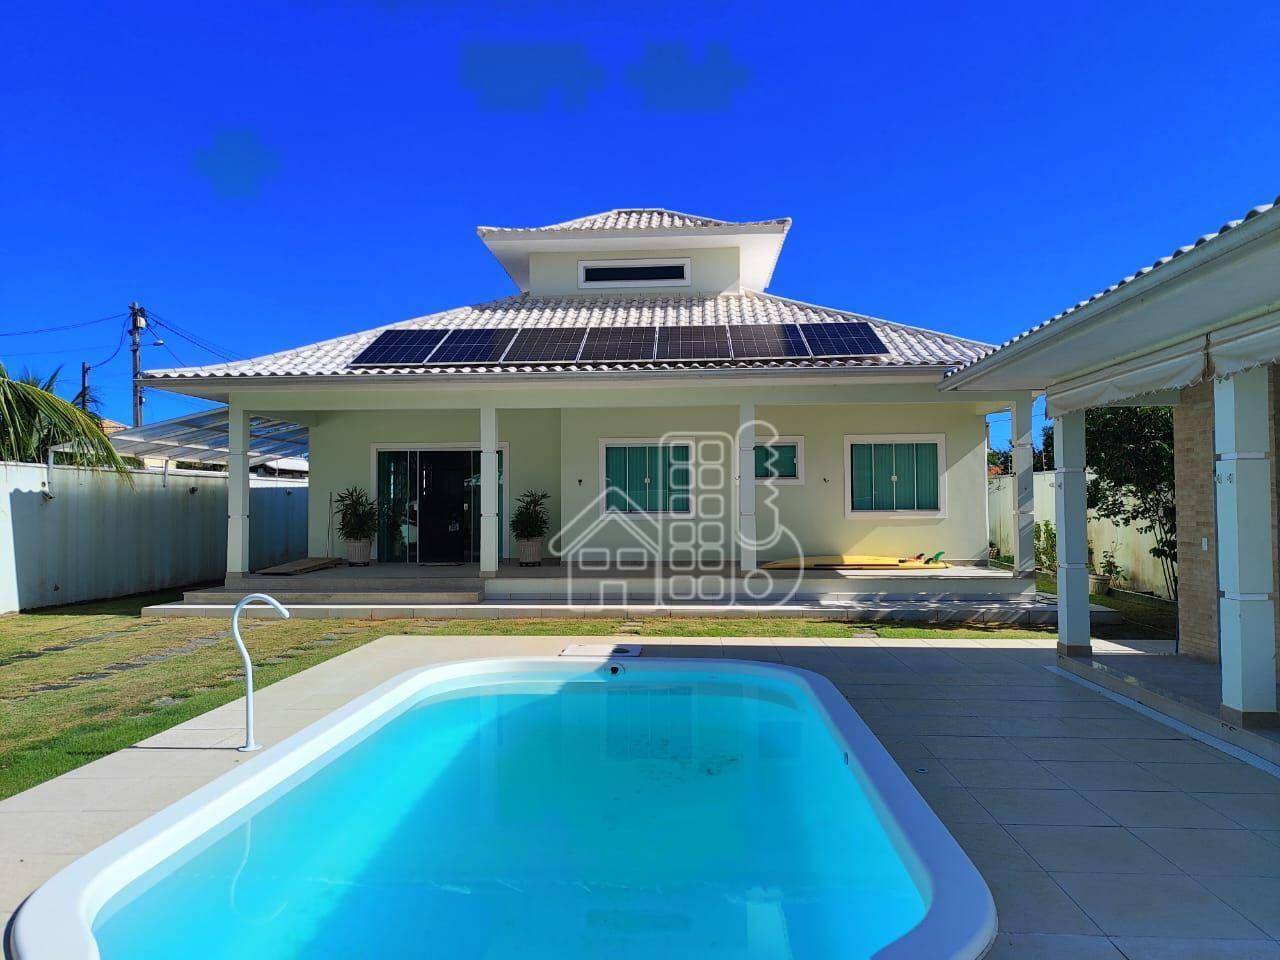 Casa com 3 dormitórios à venda, 300 m² por R$ 880.000,01 - Jaconé (Ponta Negra) - Maricá/RJ